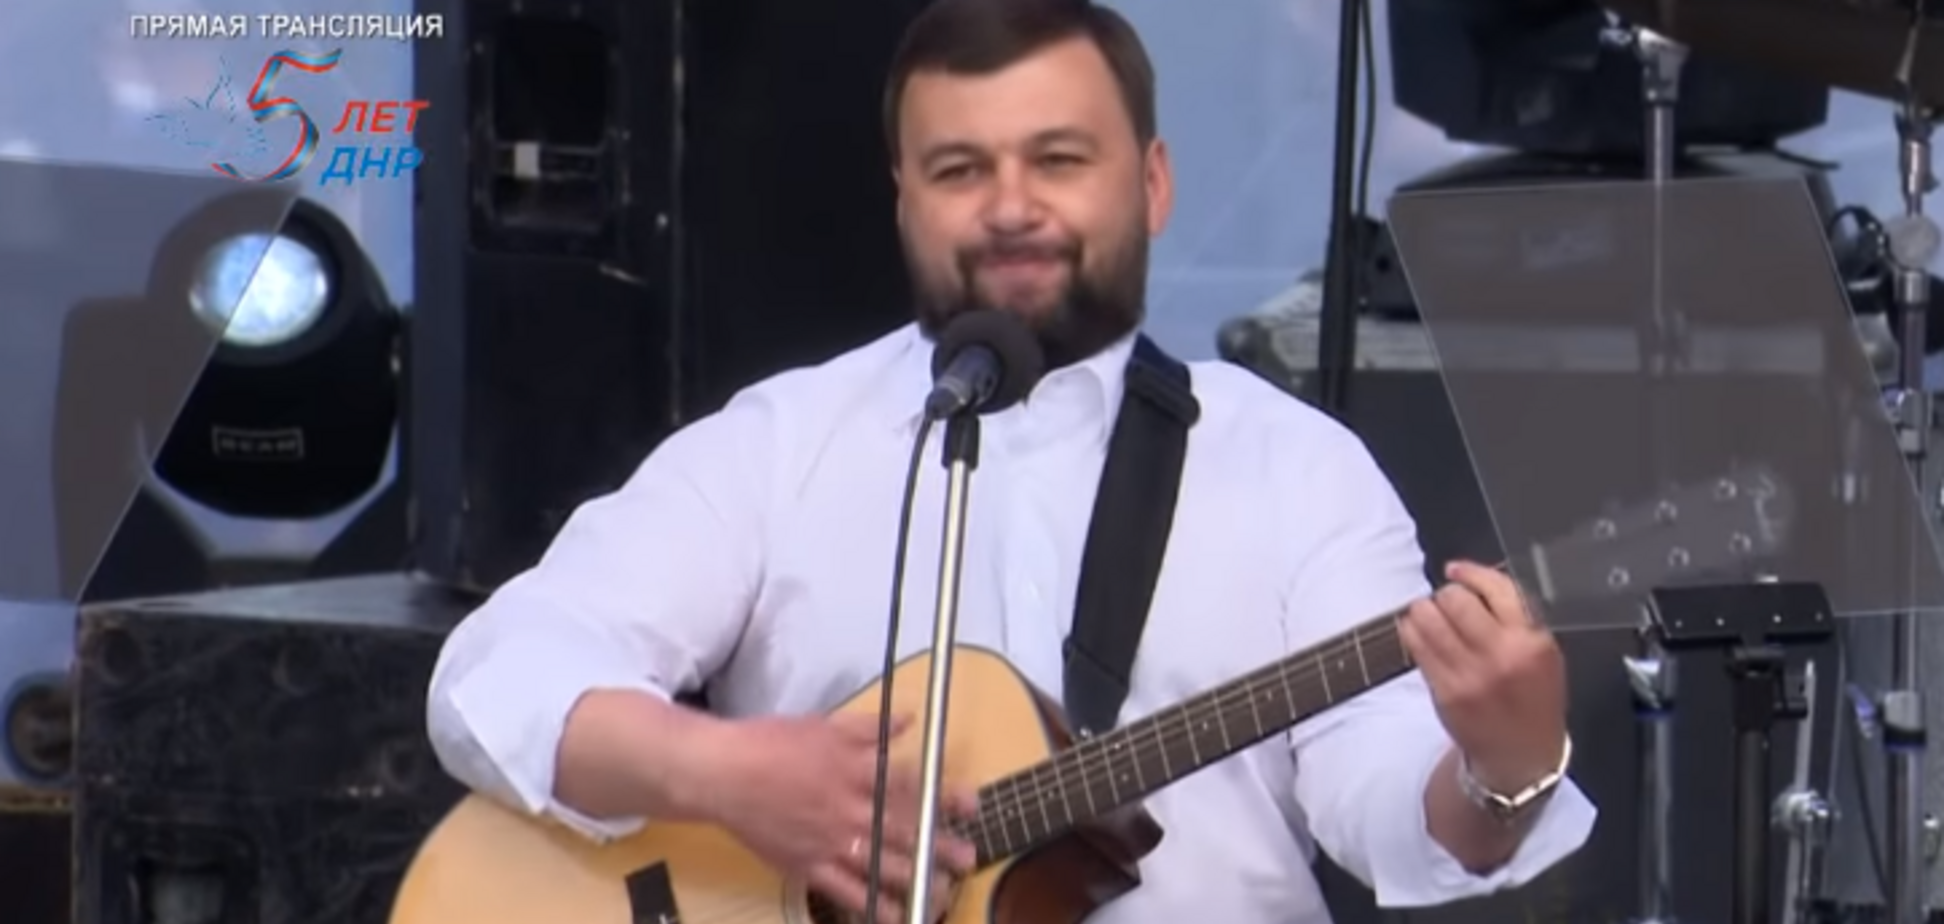 'Нікому не дамо ображати!' Ватажок 'ДНР' заспівав під гітару про вірність Росії: відео